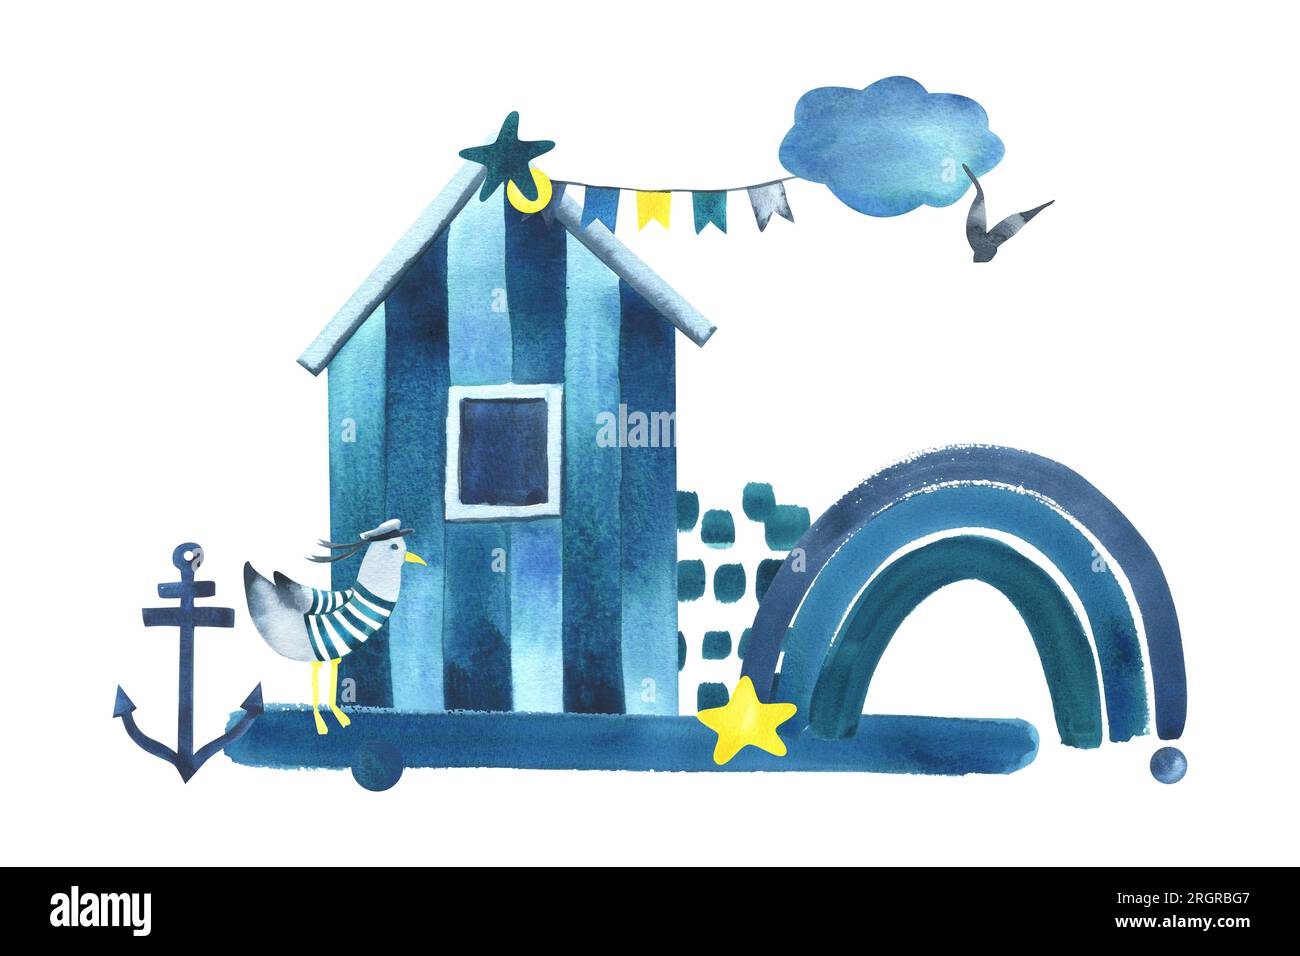 Cabine de mer de plage avec une mouette dans un gilet, un arc-en-ciel, une ancre, un nuage et des drapeaux en bleu et jaune. Illustration aquarelle dessinée à la main dans les enfants Banque D'Images